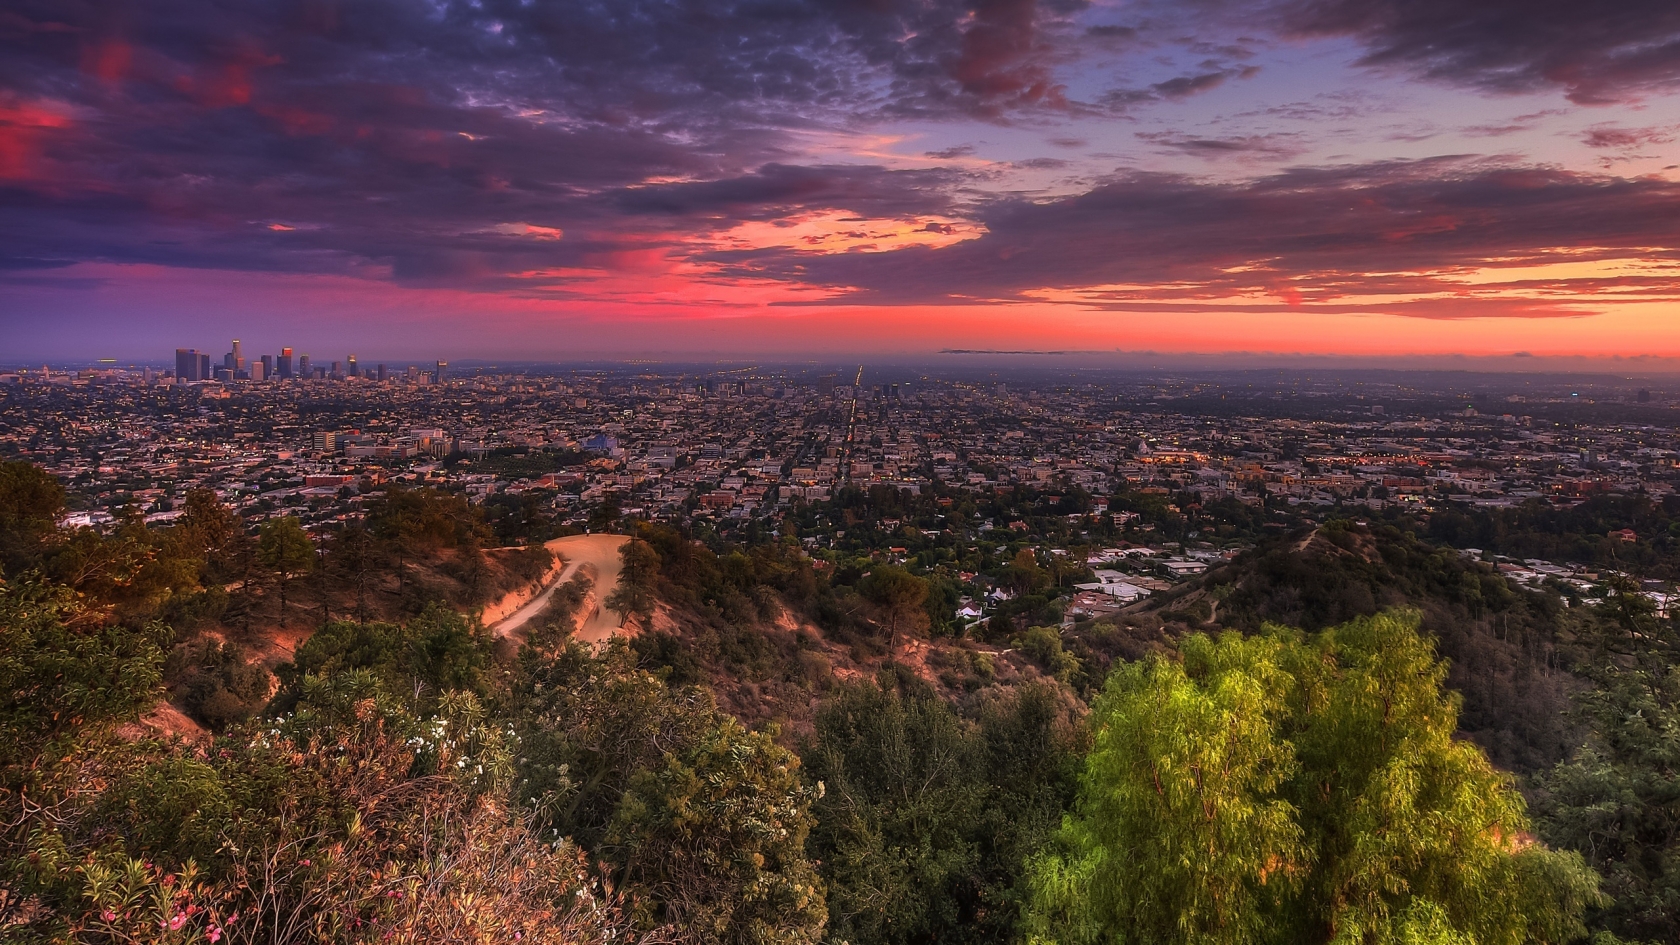 Sunset over city for 1680 x 945 HDTV resolution